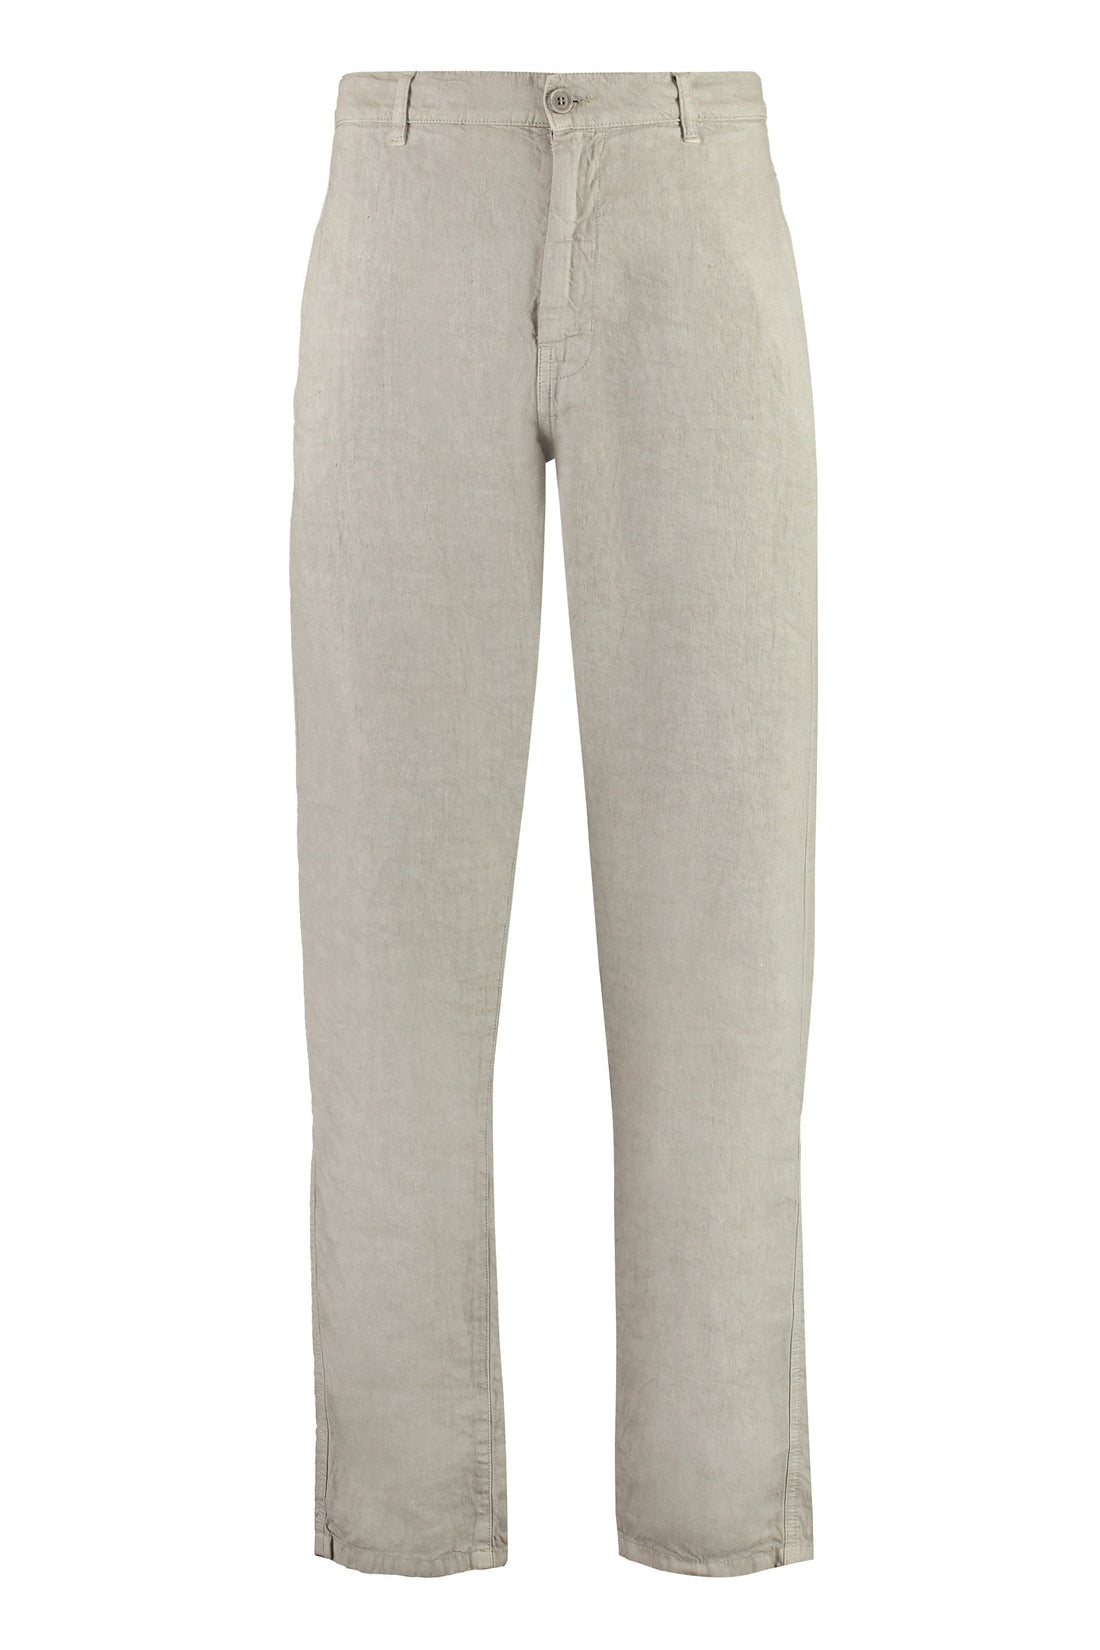 Aspesi-OUTLET-SALE-Linen trousers-ARCHIVIST